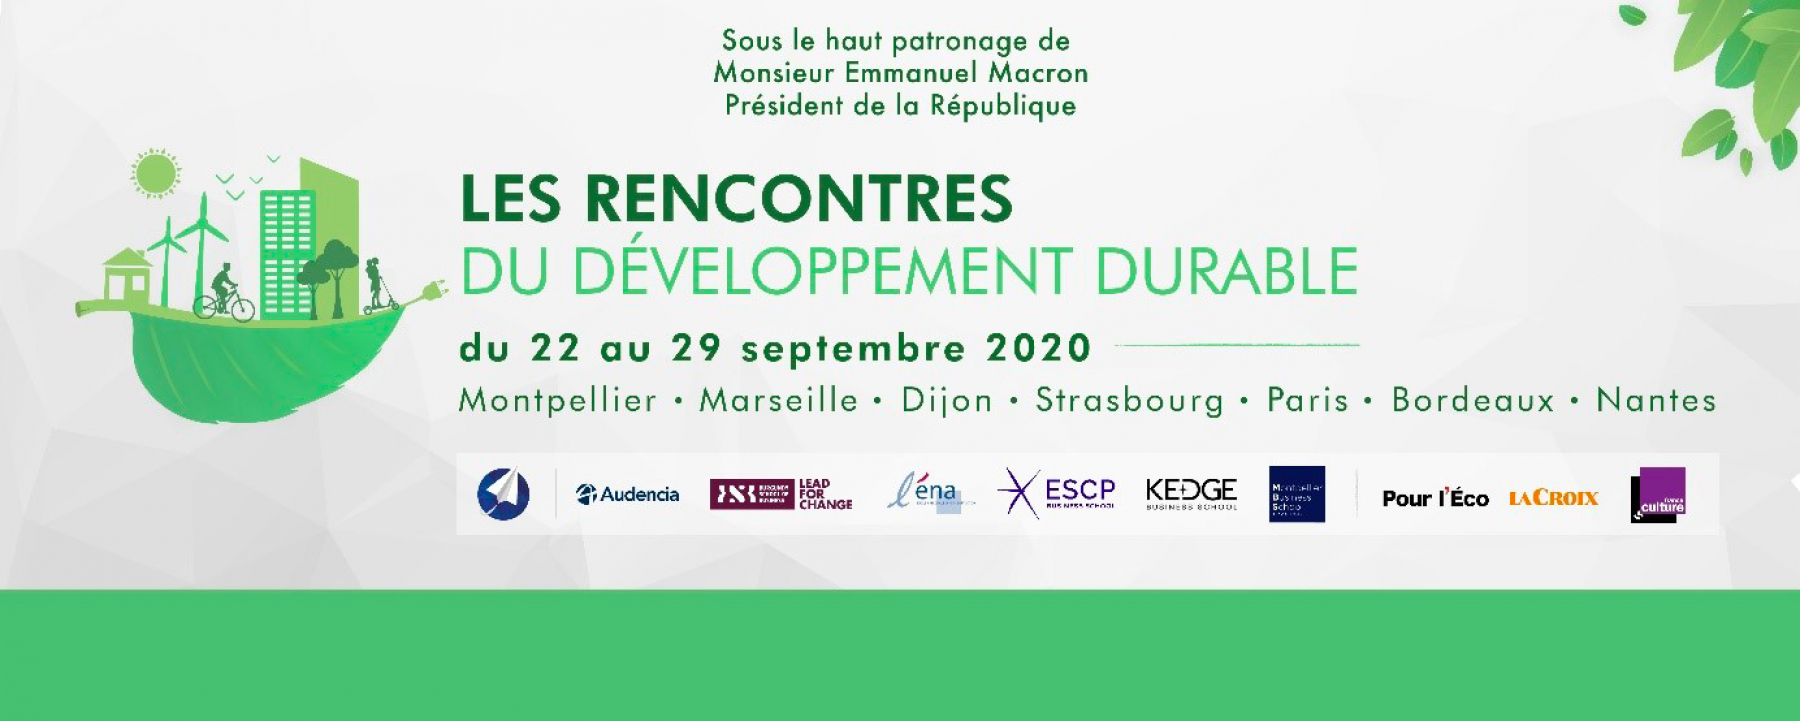 Les Rencontres du Développement Durable, organisées par Institut Open Diplomacy du 22 au 29 septembre 2020 